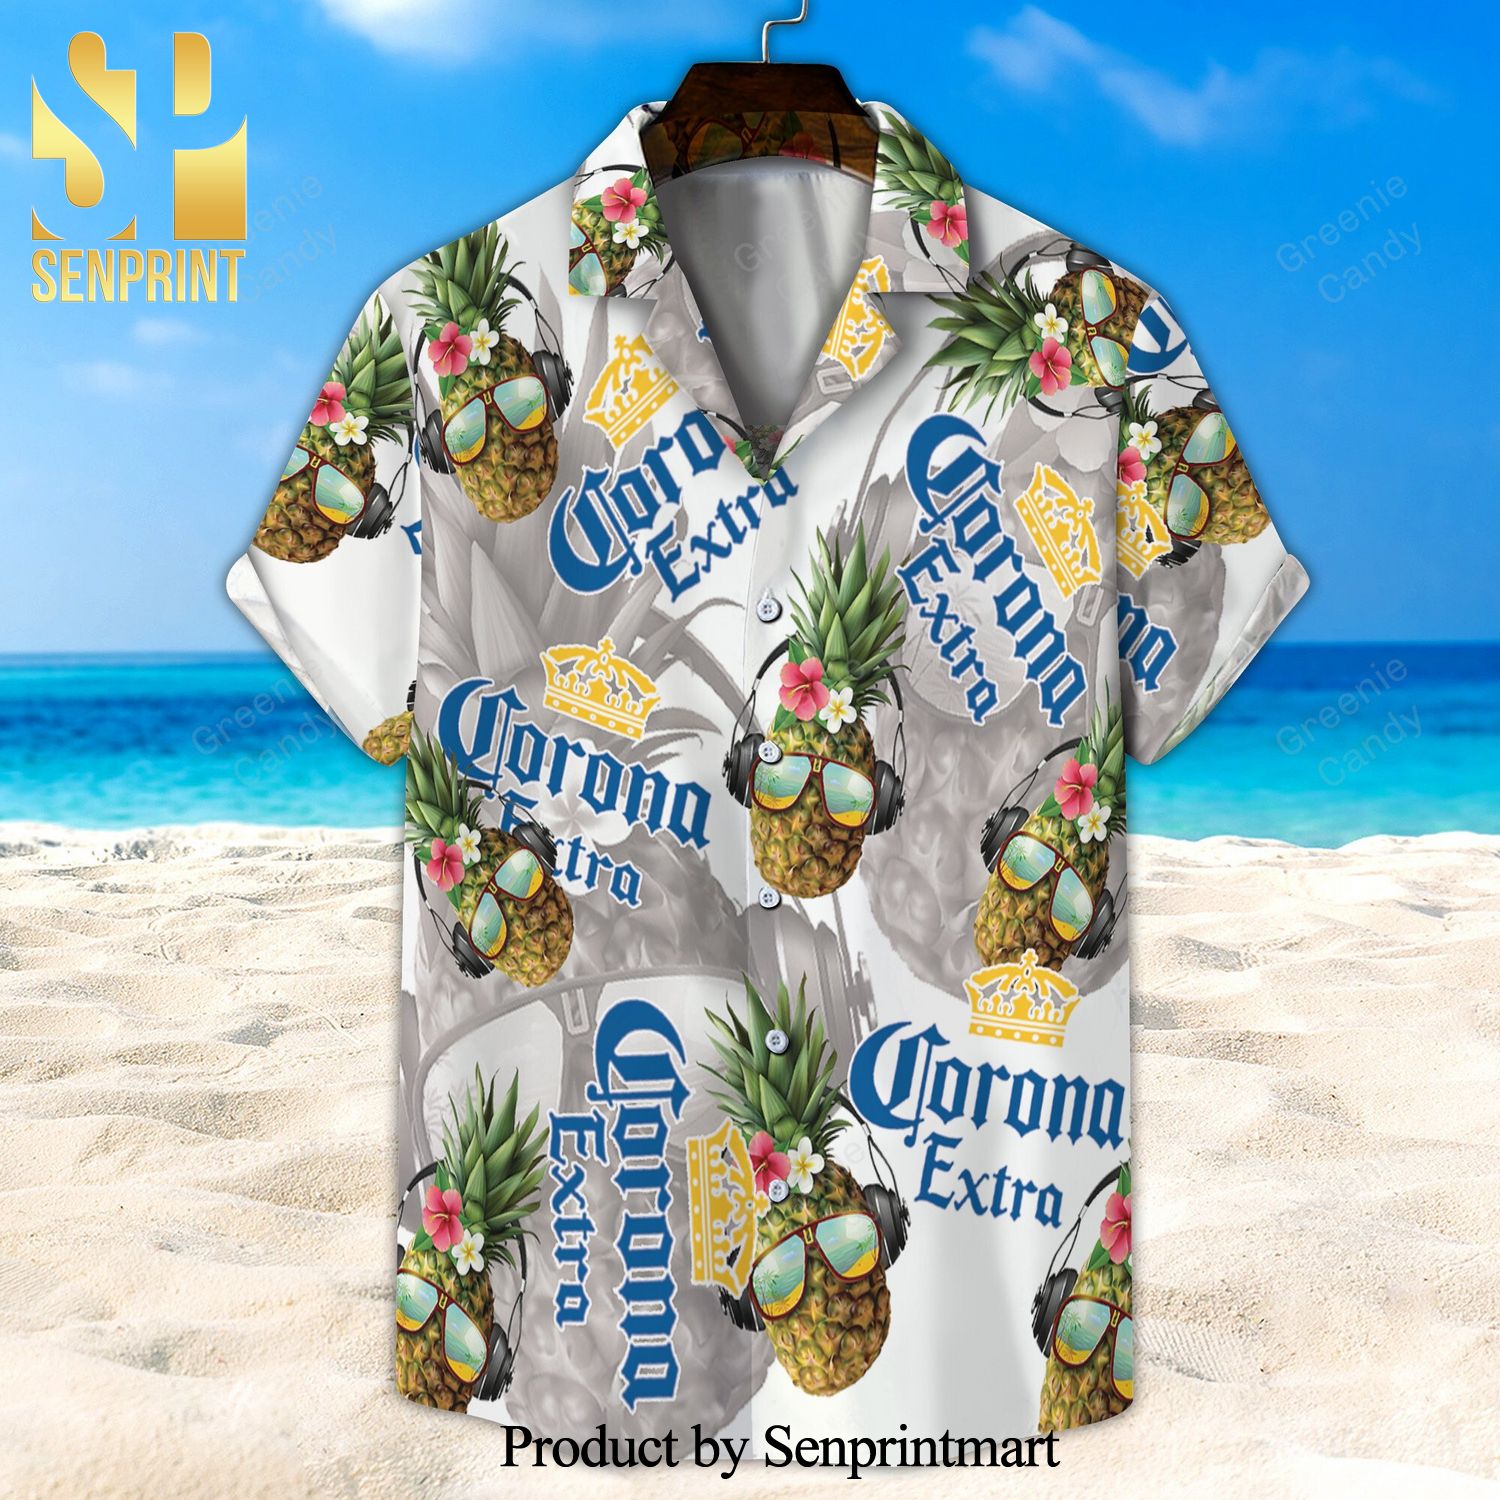 Corona Extra Funny Pineapple Full Printing Unisex Hawaiian Shirt And Beach Short